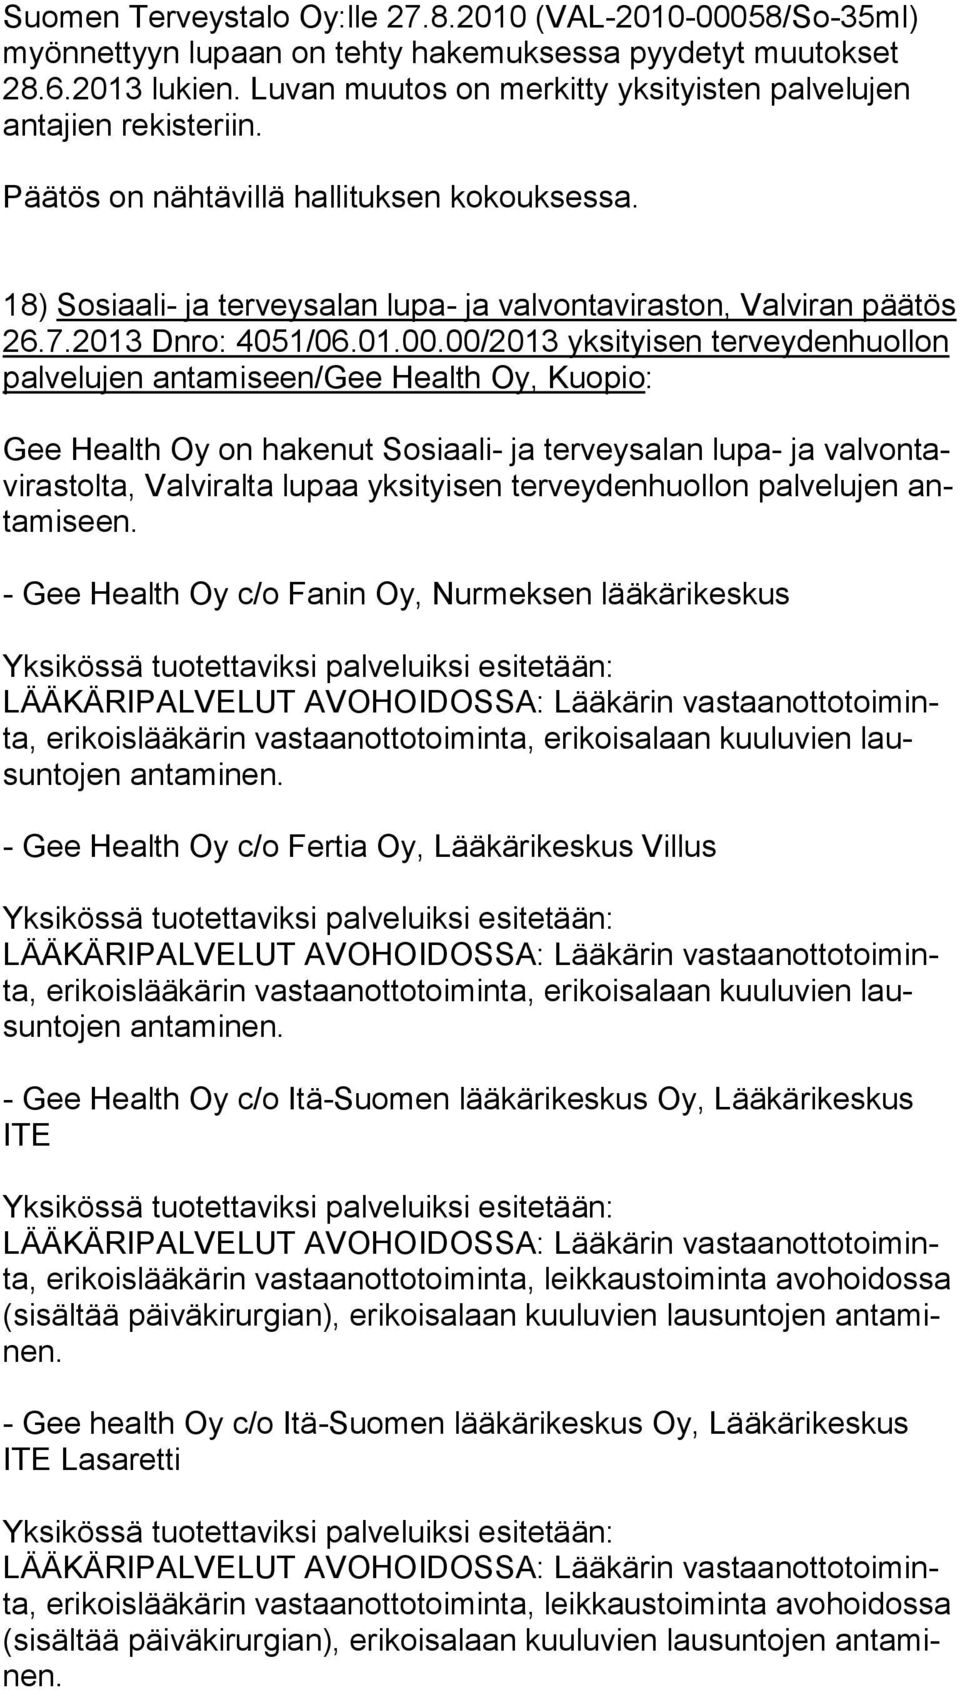 00/2013 yksityisen ter vey den huol lon palvelujen antamiseen/gee Health Oy, Kuopio: Gee Health Oy on hakenut Sosiaali- ja terveysalan lupa- ja val von tavi ras tol ta, Valviralta lupaa yksityisen